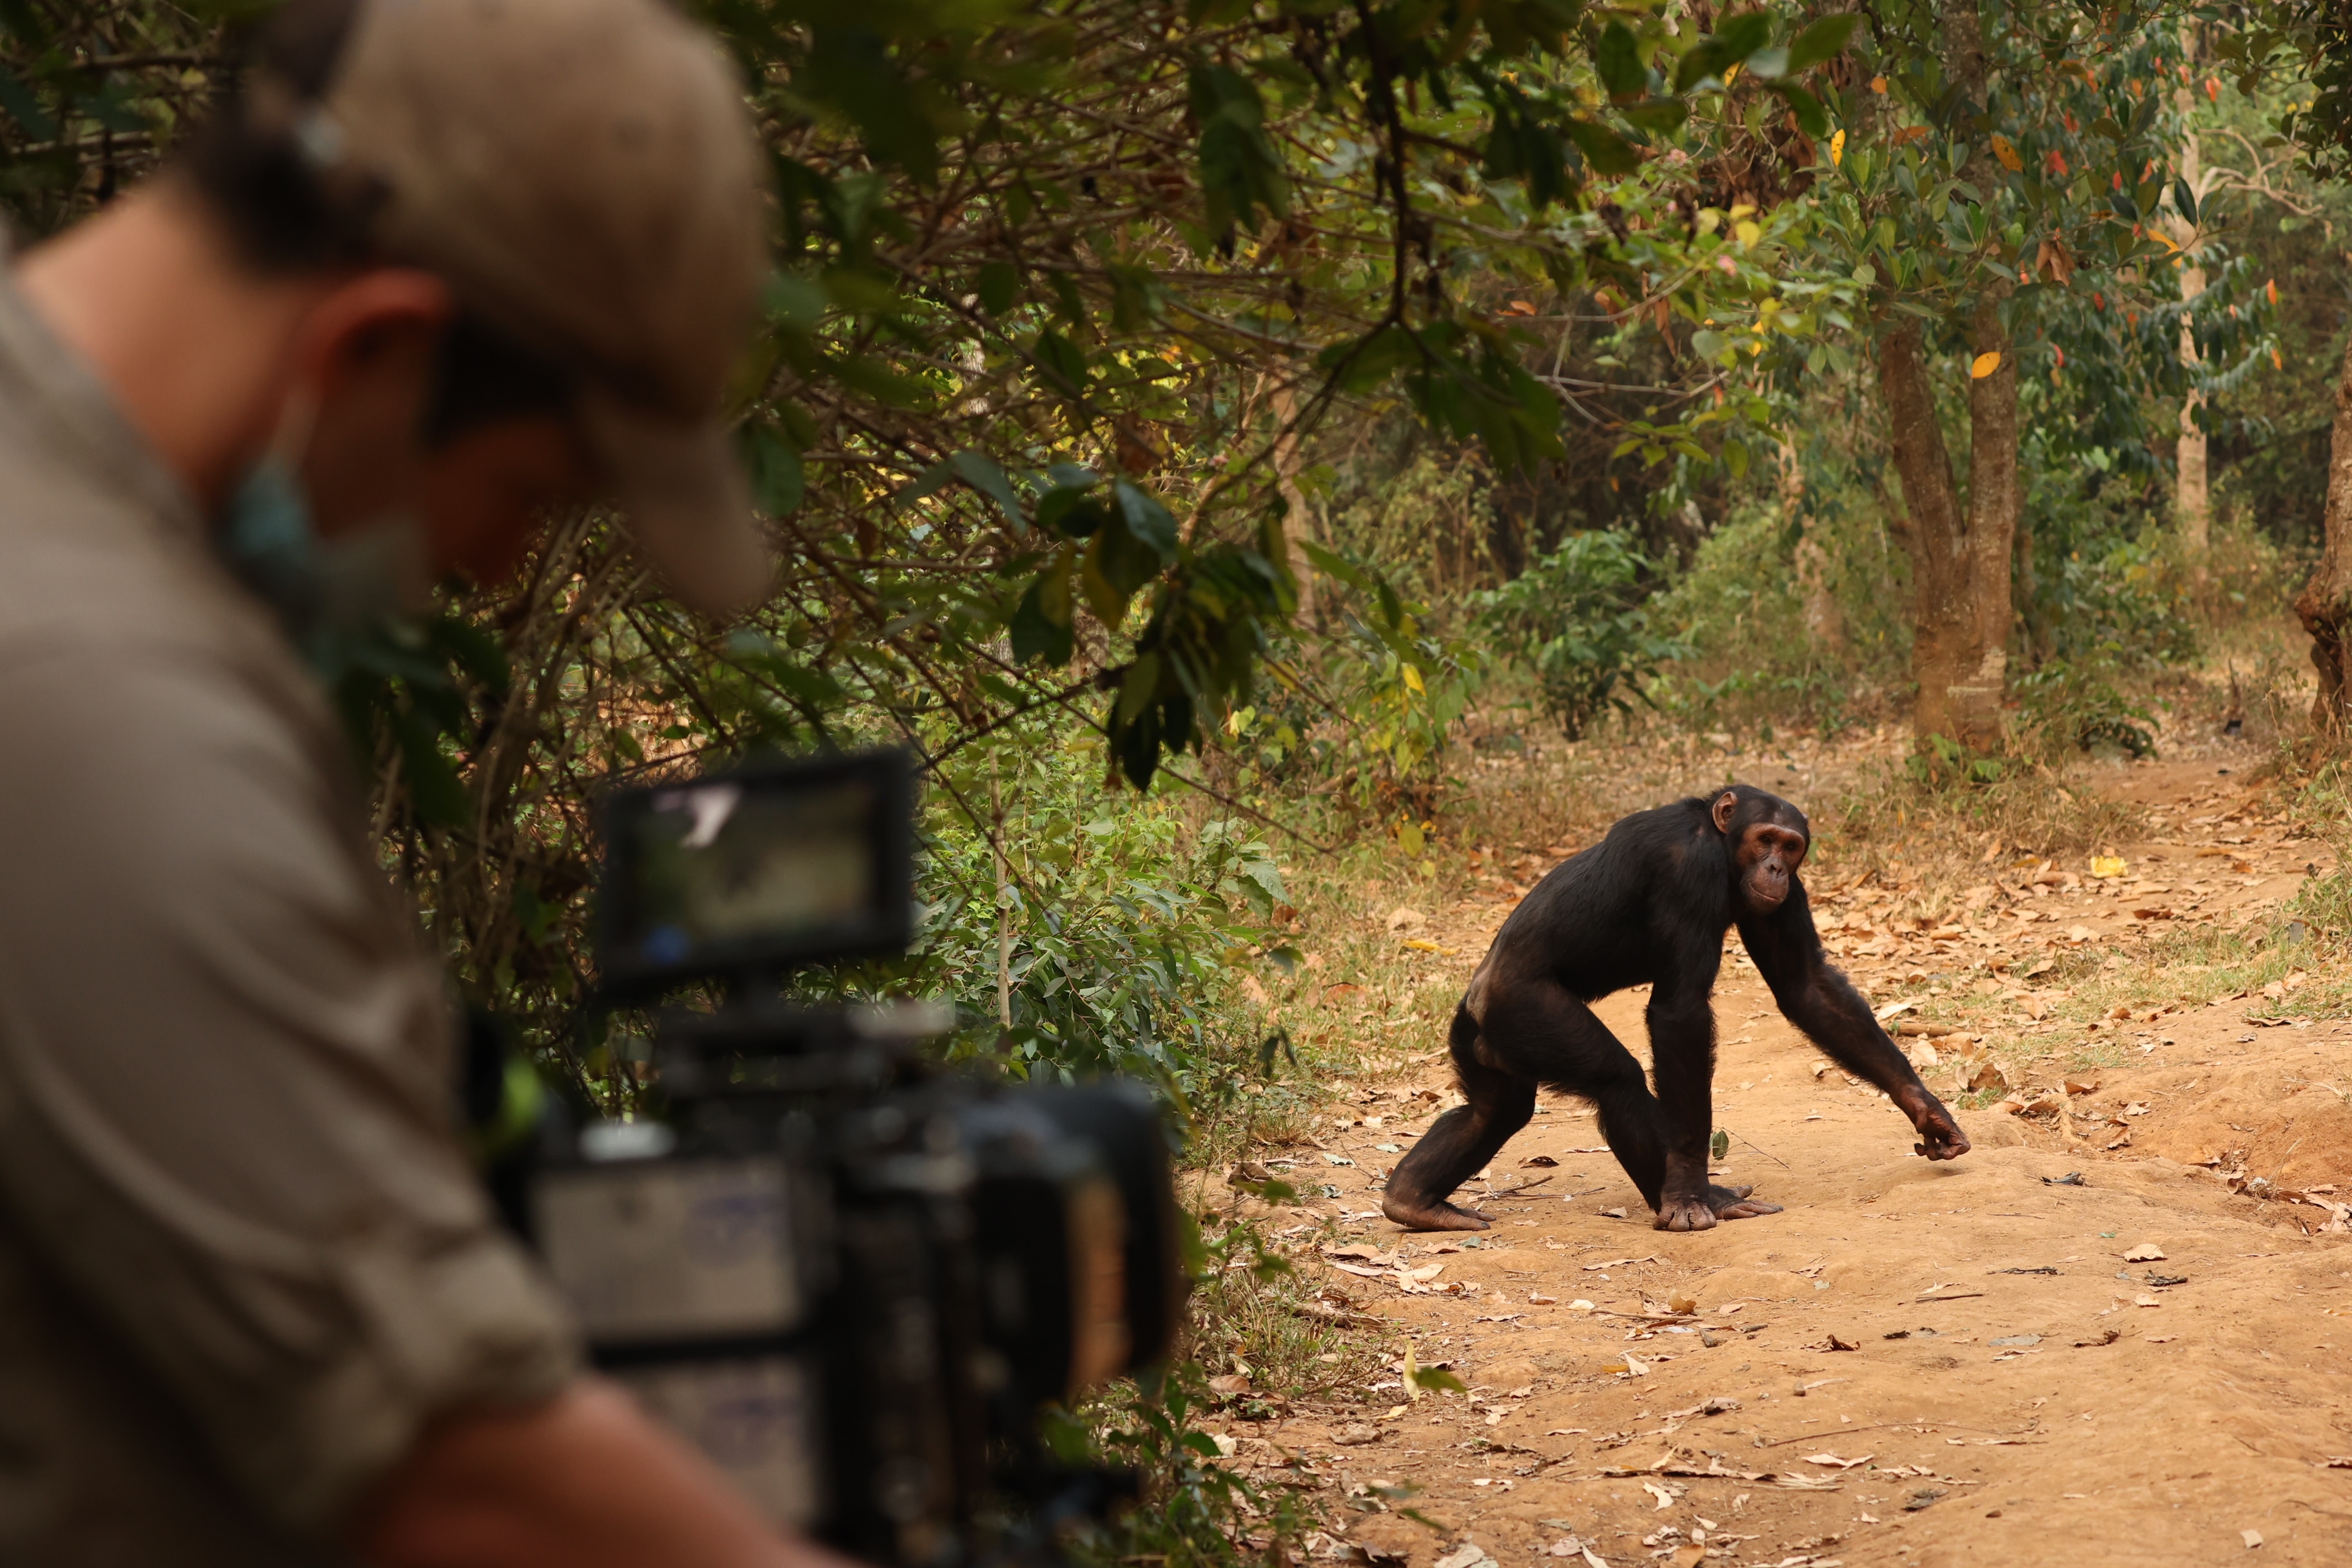 A cameraman films a chimp.